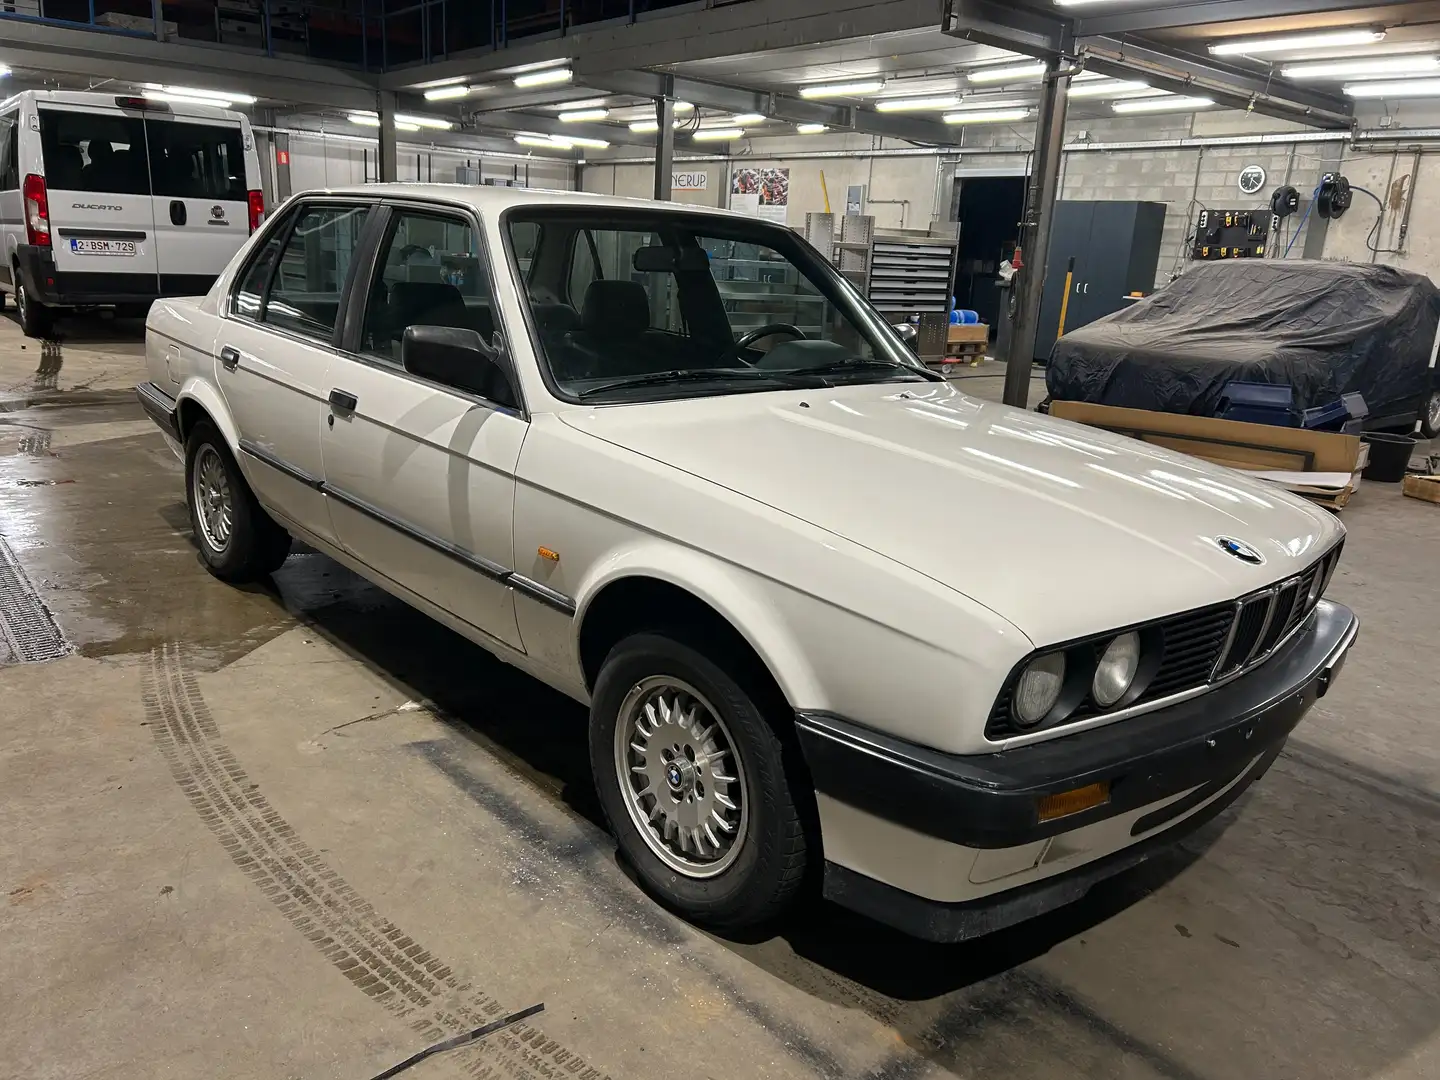 BMW 316 zeer nette toestand , volledig in orde geen rot bijela - 2